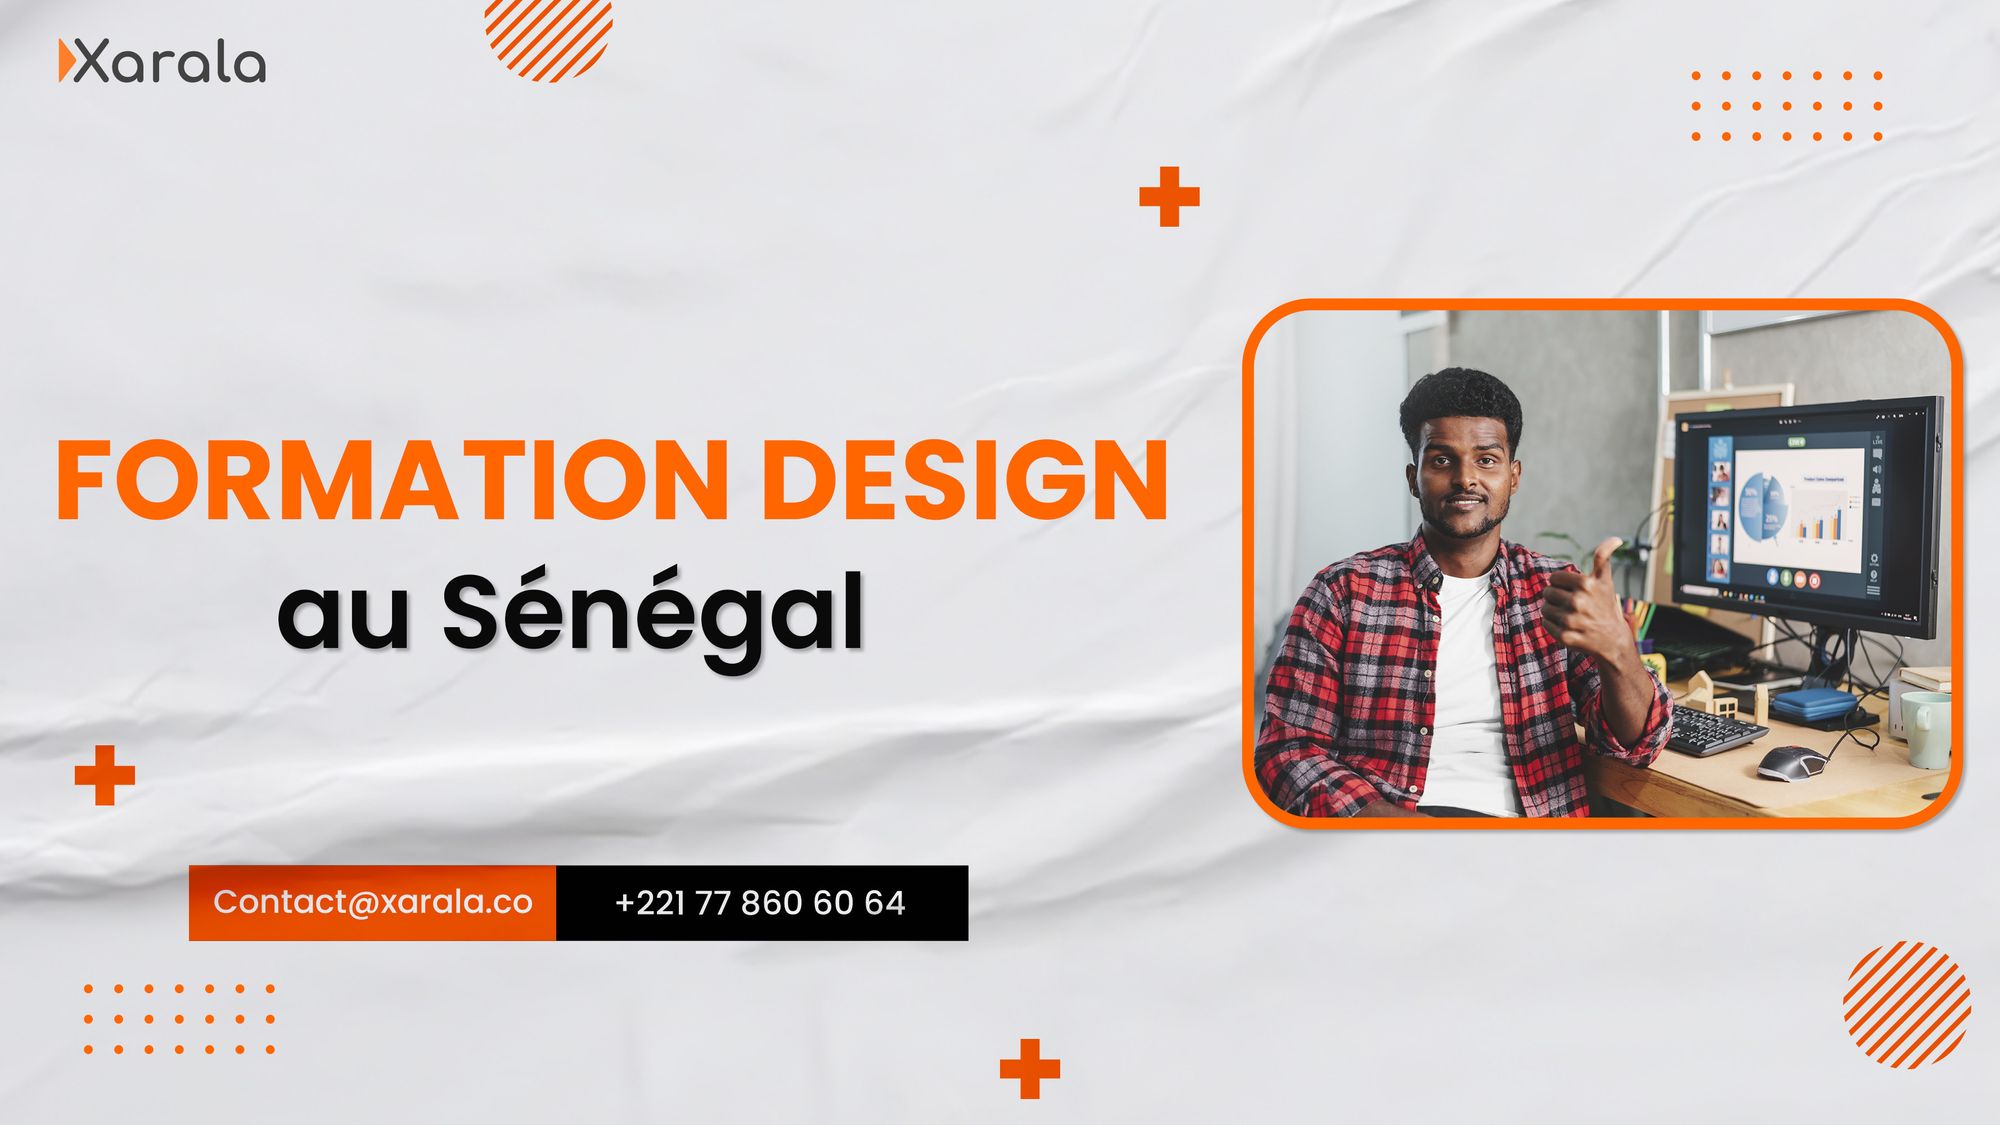 La formation design au Sénégal